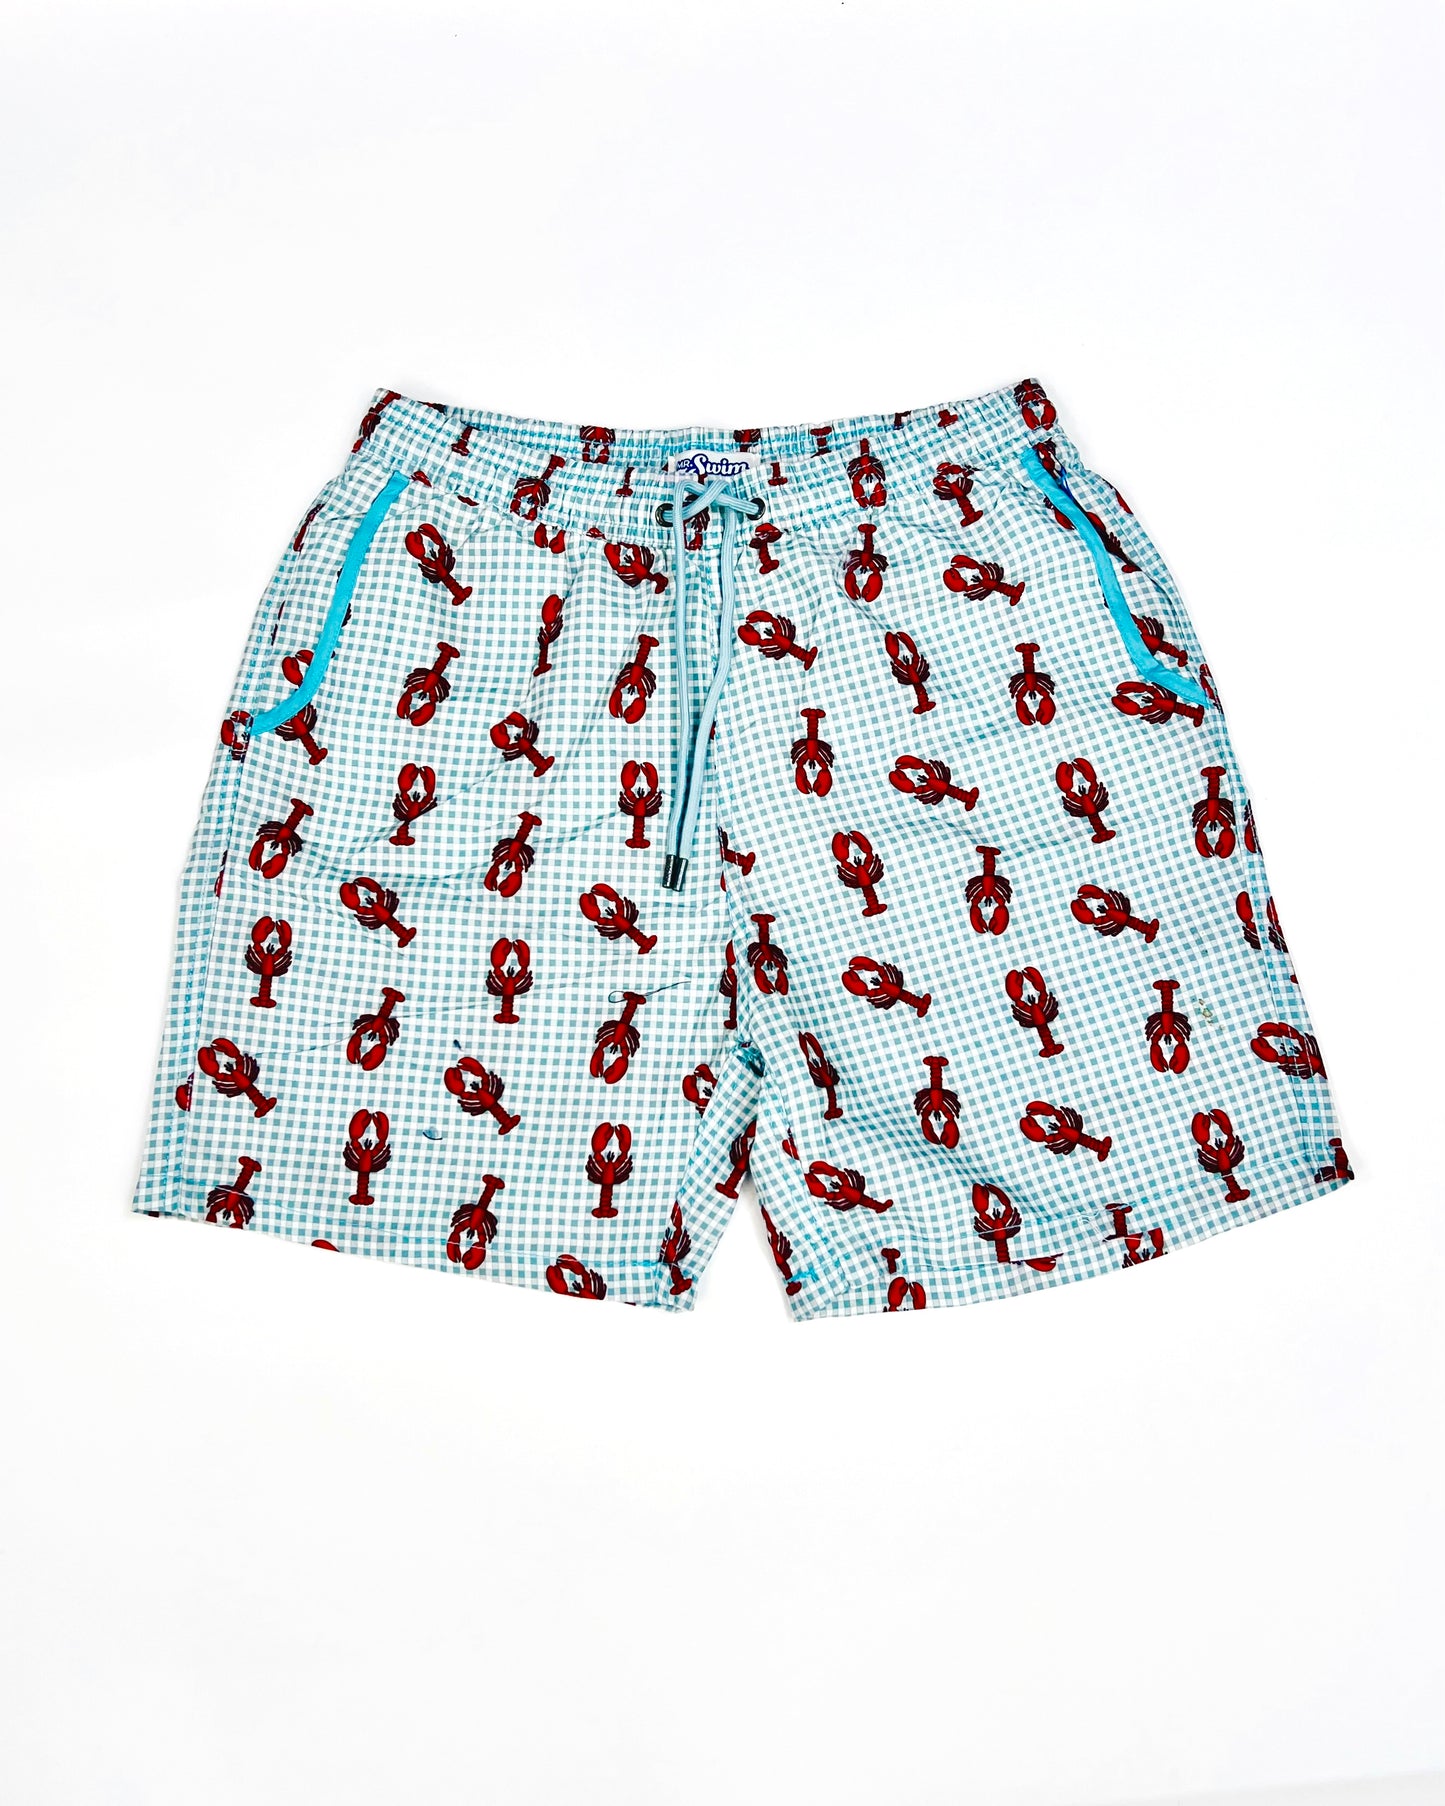 Mr Swim Lobster 🦞 Print swim shorts